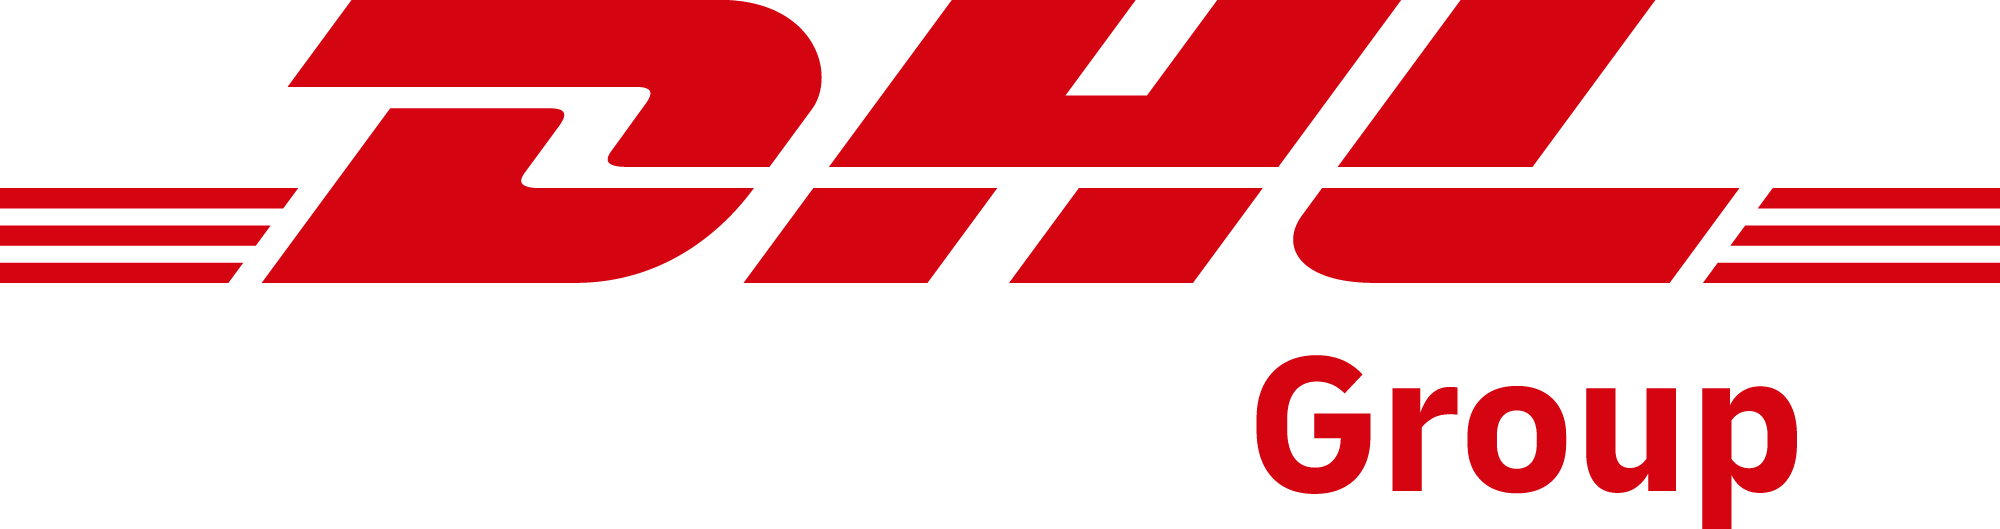 DHL_Group_logo_rgb_BG